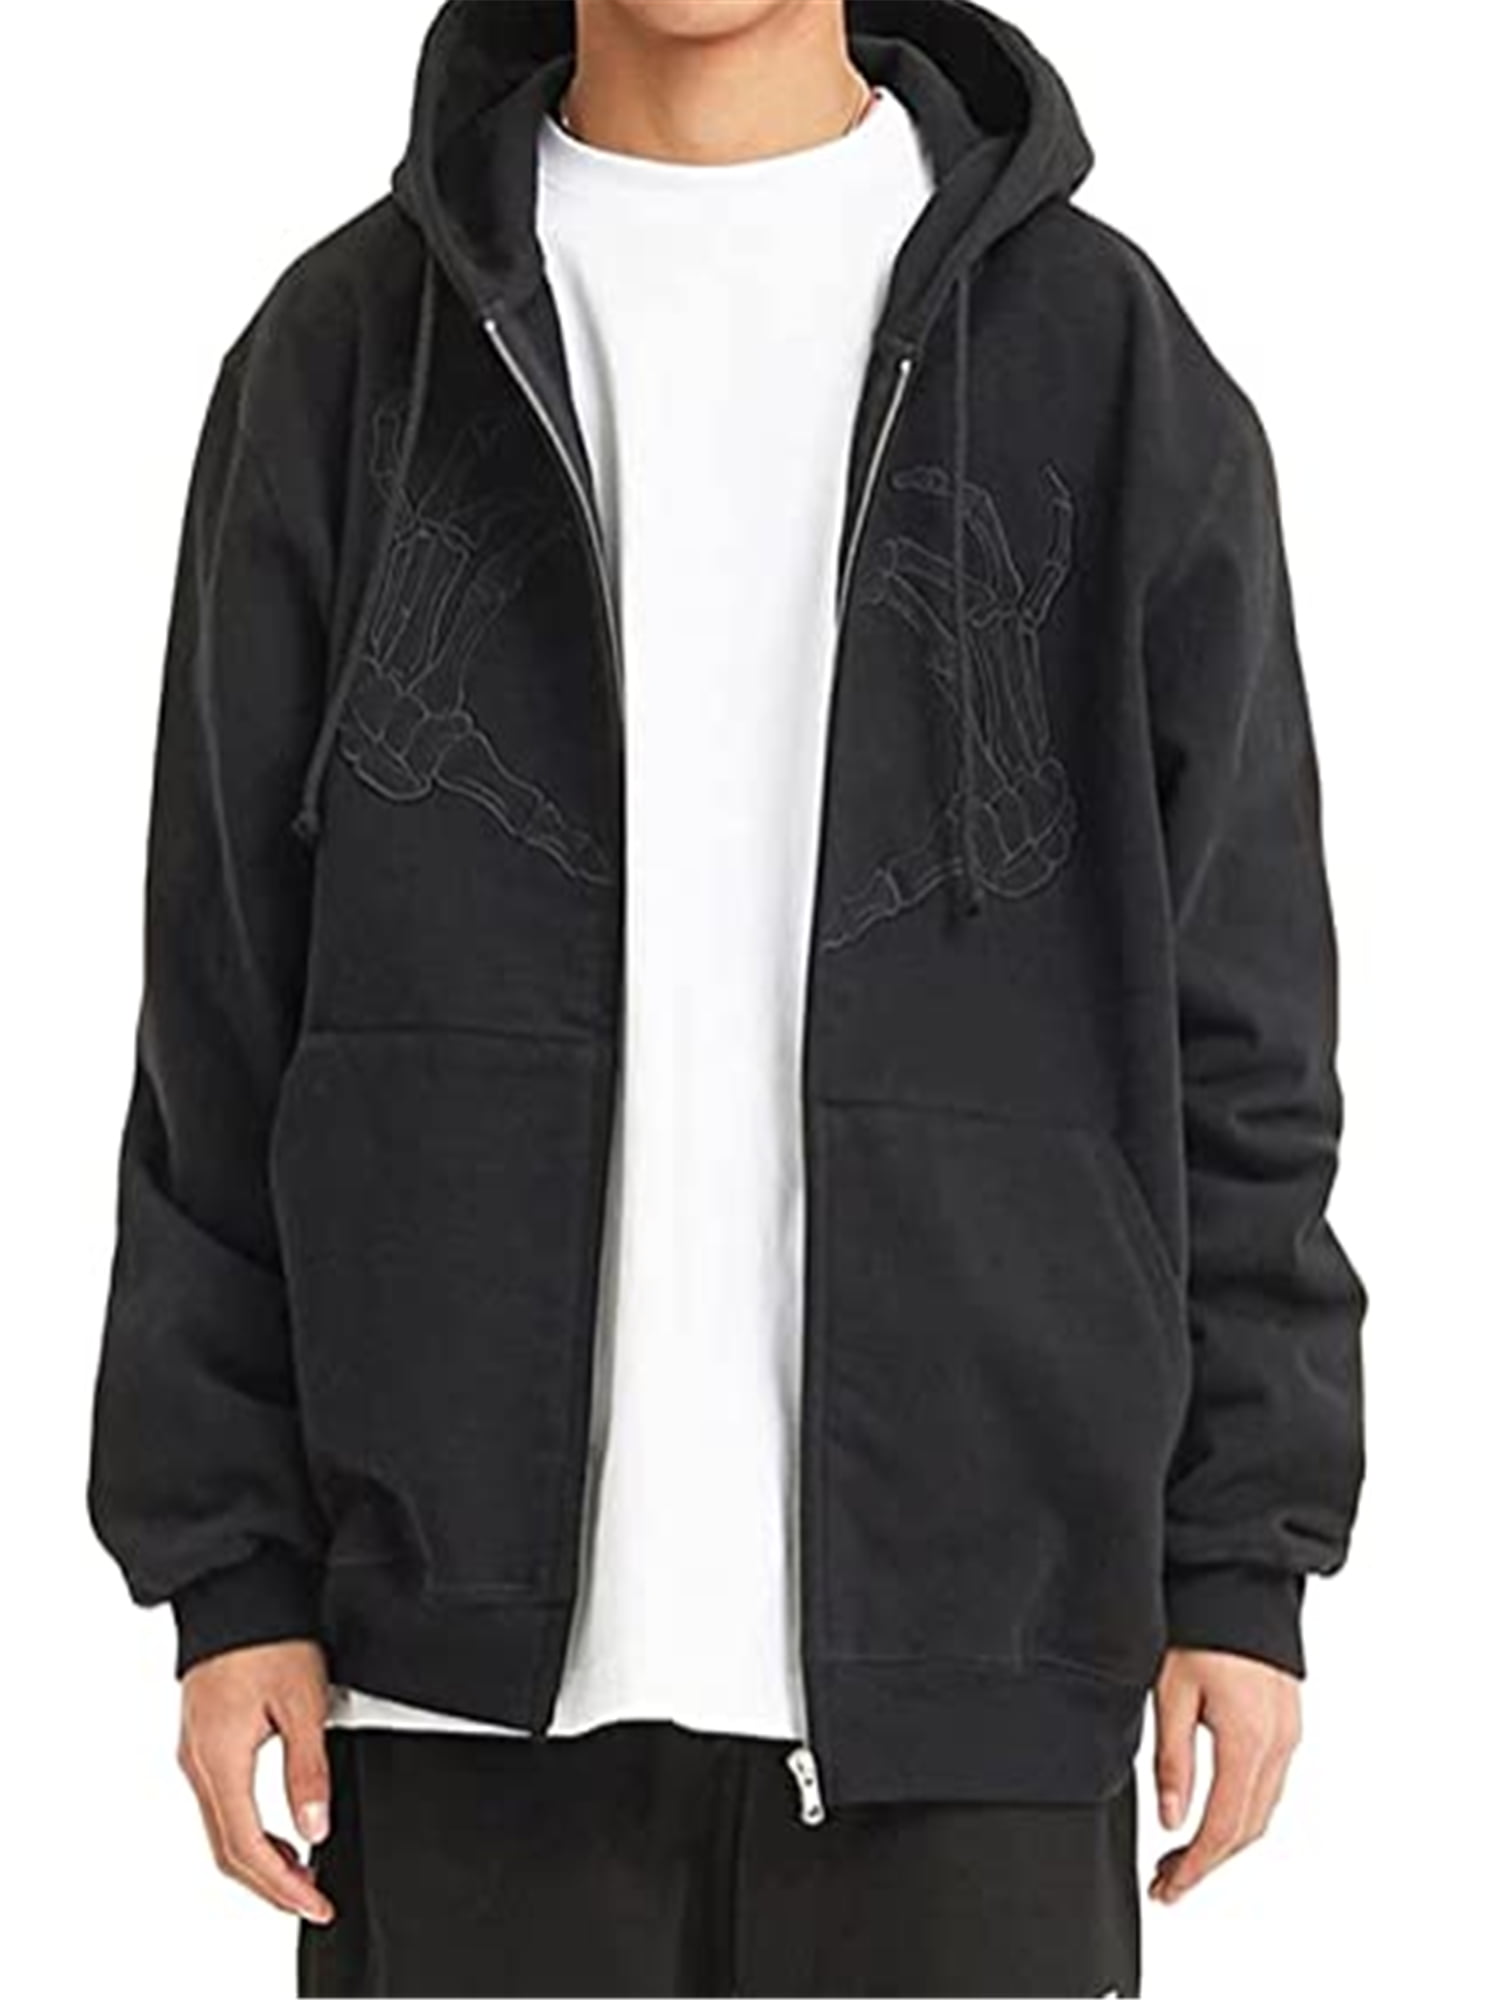 Hoodie for Womens Mens Skeleton Sweatshirts Y2K Distressed Tops Trendy Long Sleeve Shirts Hooded Pullover 